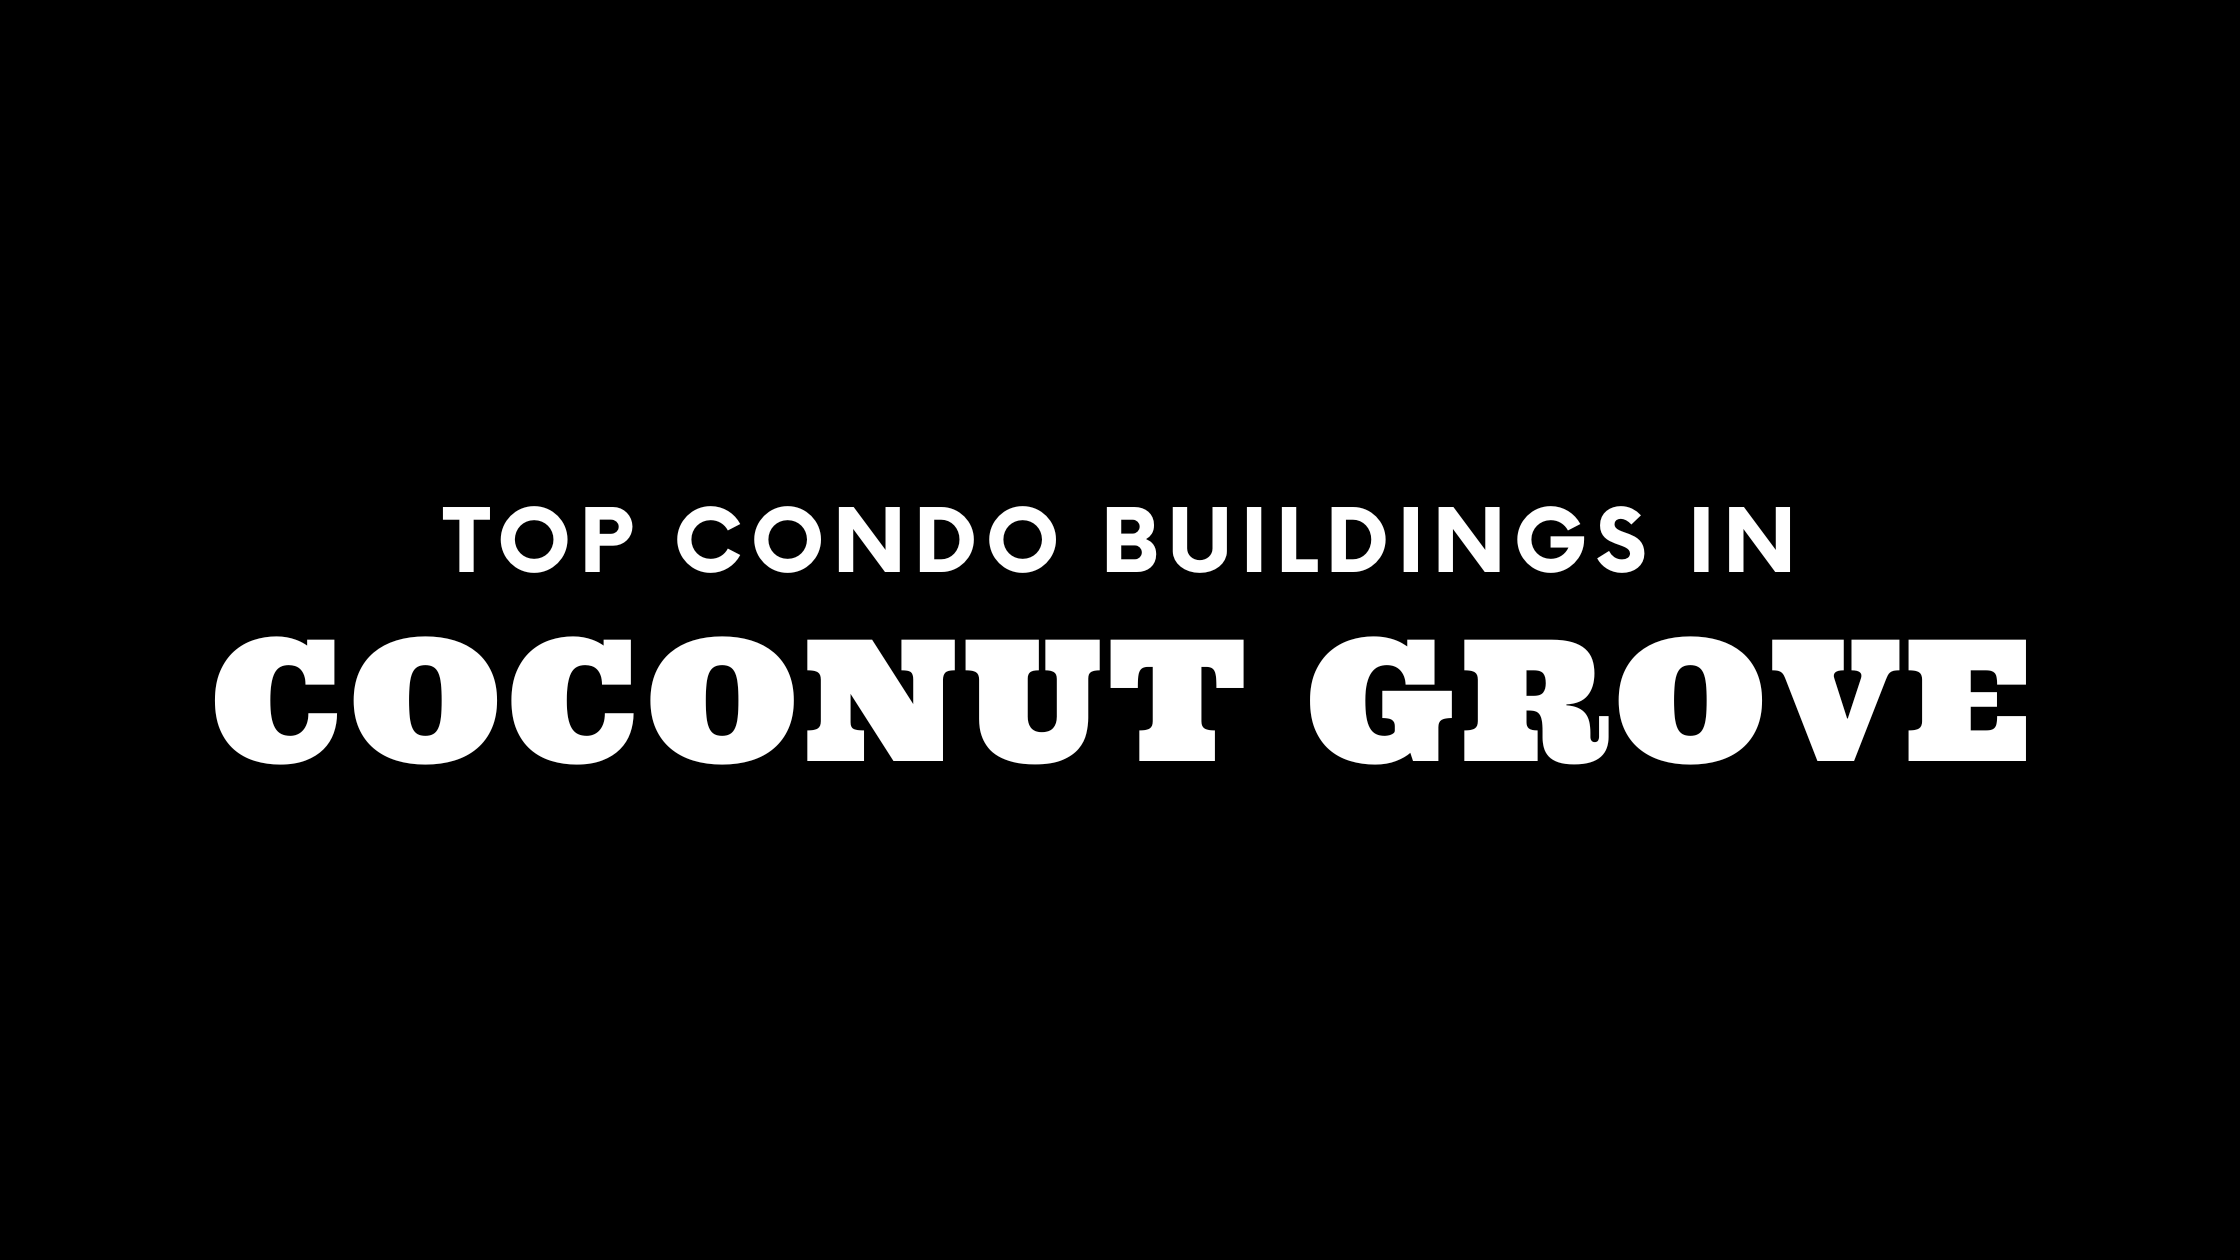 Top Condo Buildings in Coconut Grove